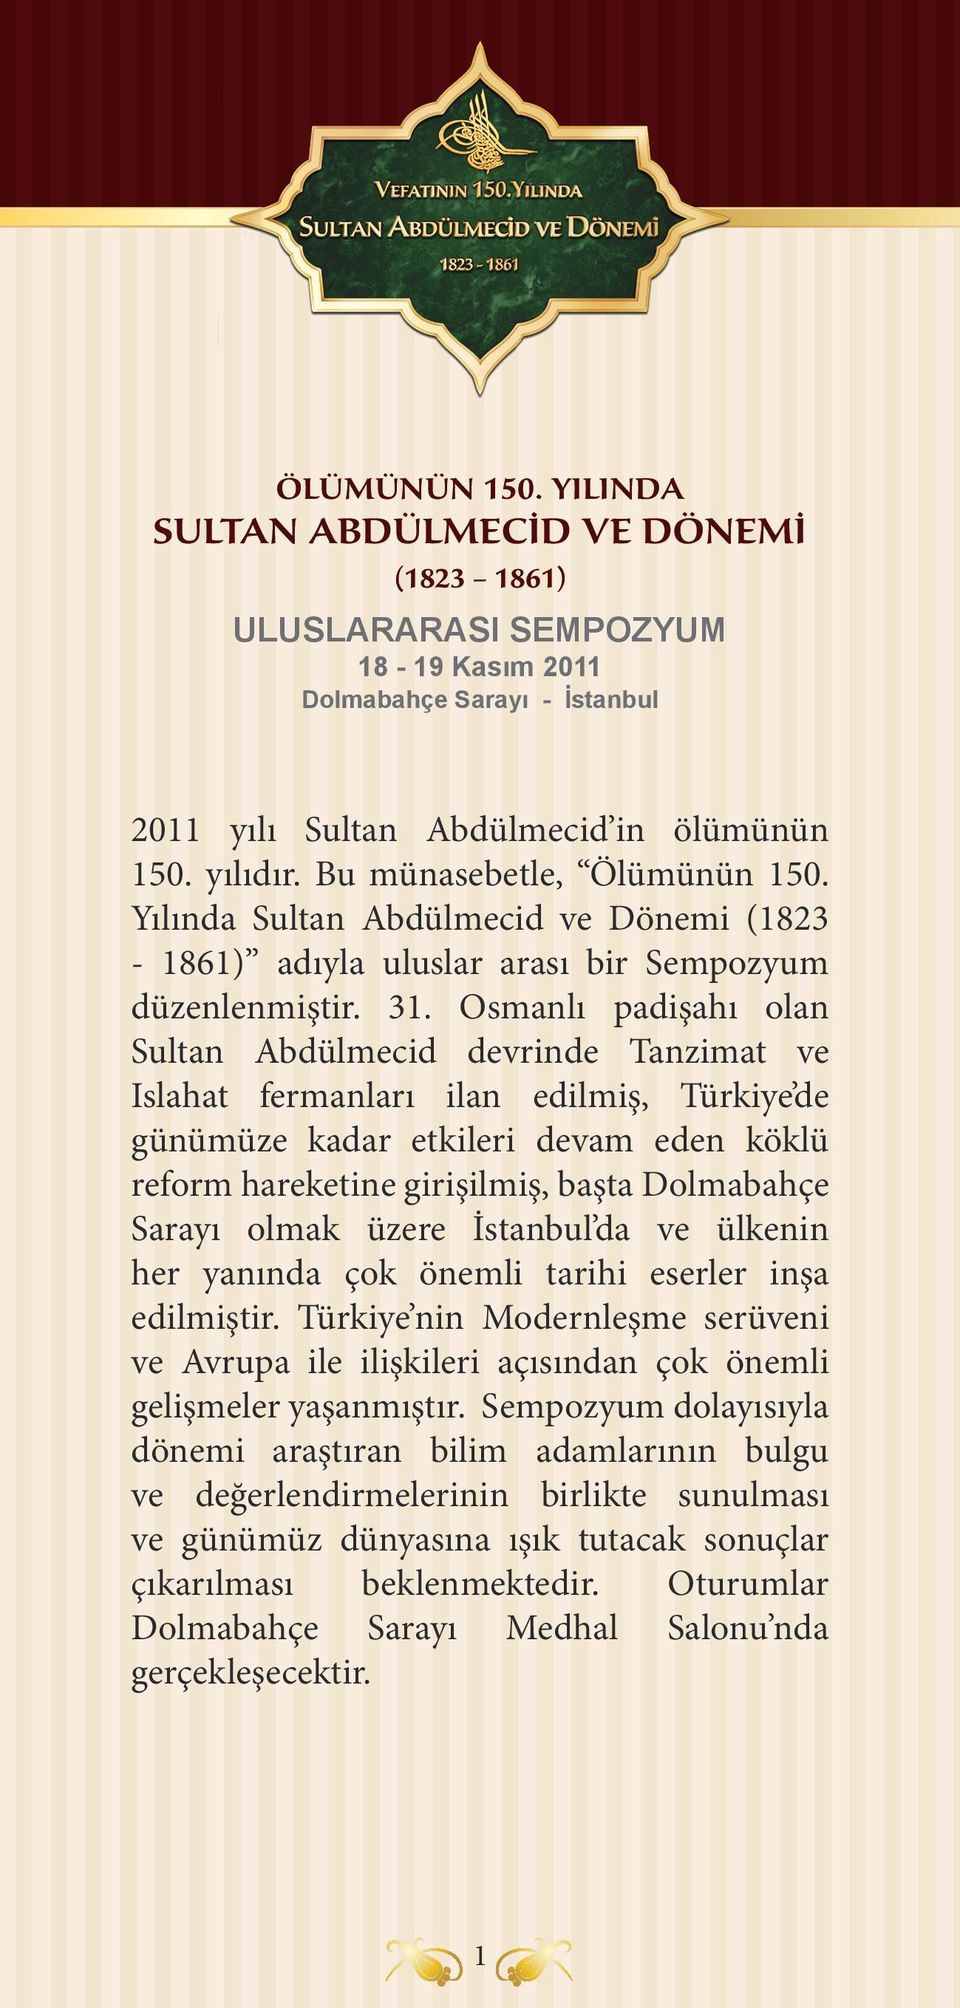 Osmanlı padişahı olan Sultan Abdülmecid devrinde Tanzimat ve Islahat fermanları ilan edilmiş, Türkiye de günümüze kadar etkileri devam eden köklü reform hareketine girişilmiş, başta Dolmabahçe Sarayı